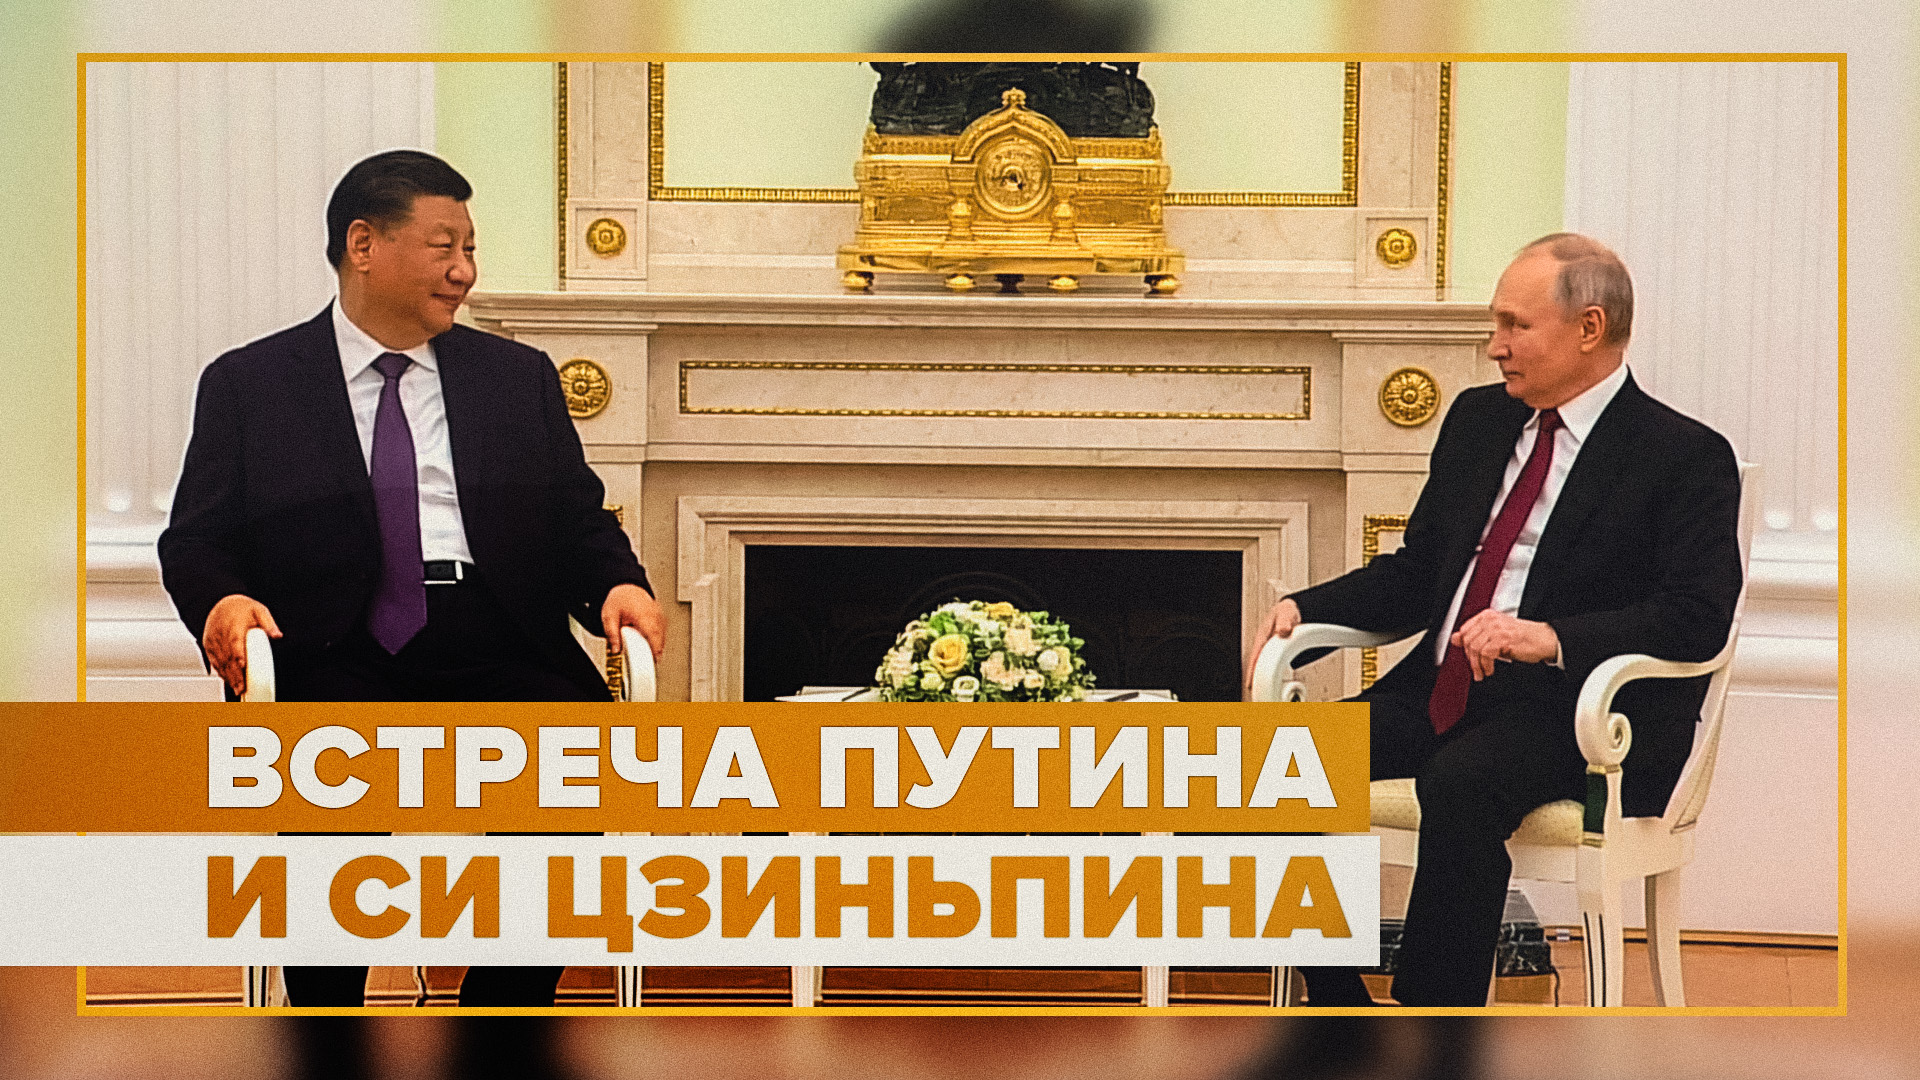 Двусторонняя встреча Путина и Си Цзиньпина